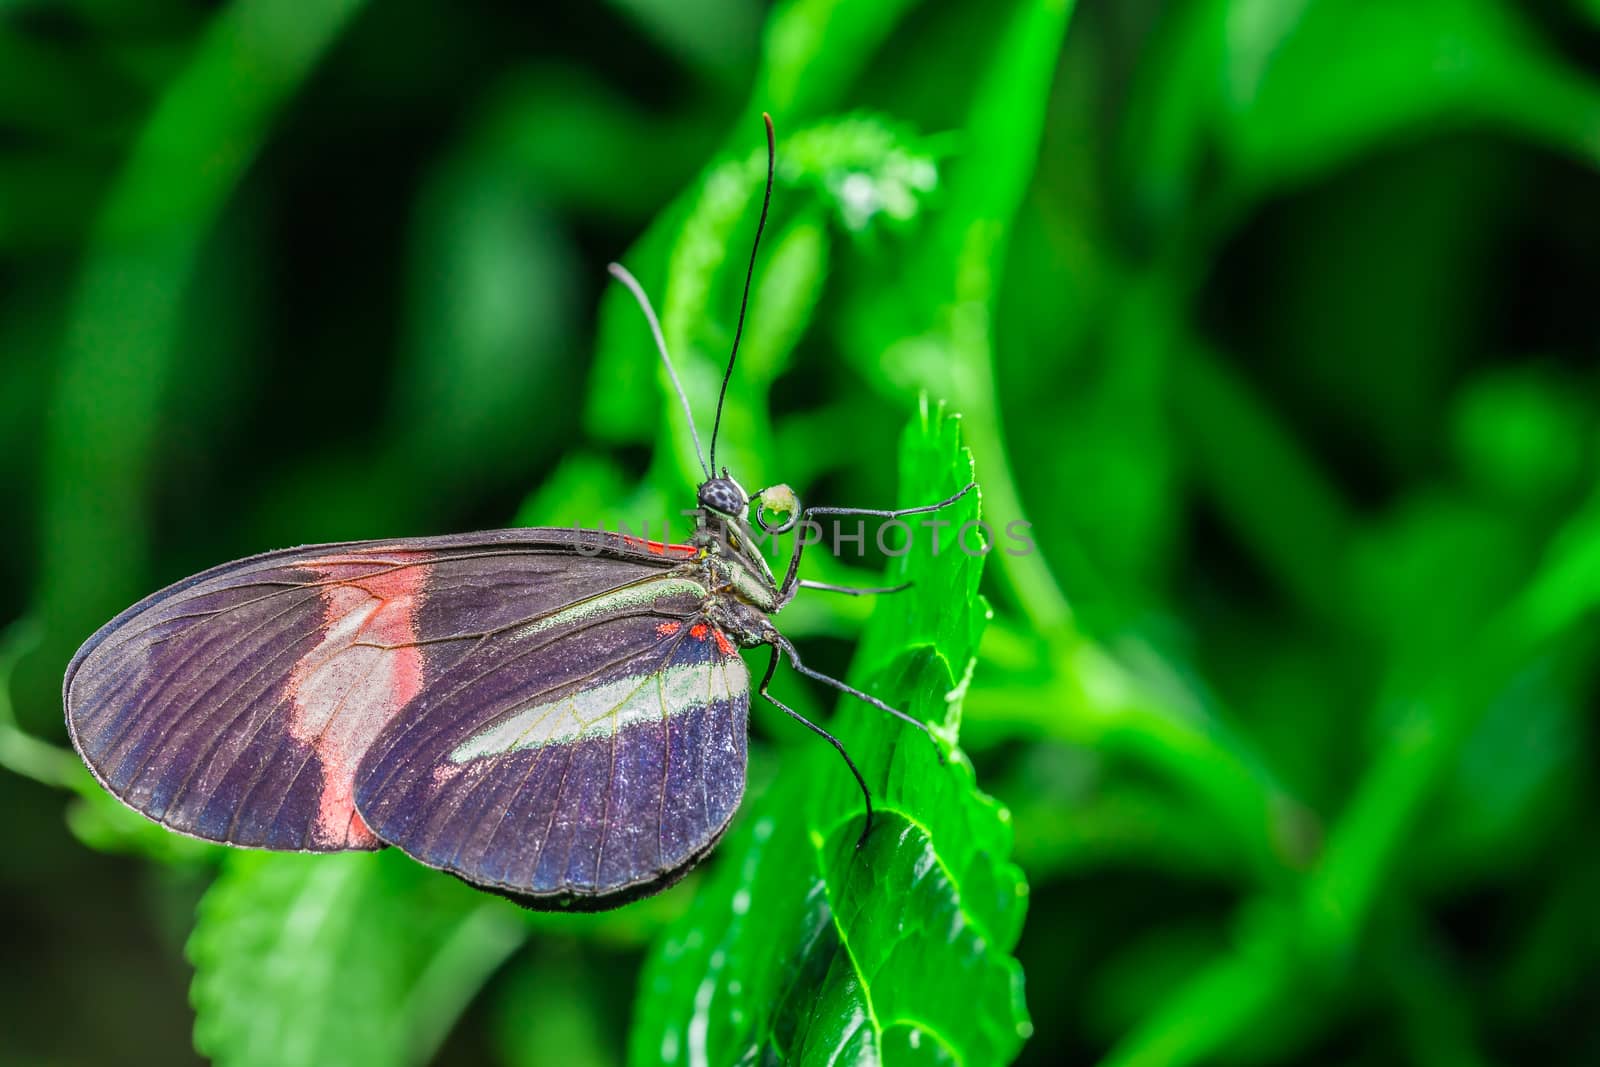 A beautiful butterfly on a flower by petkolophoto